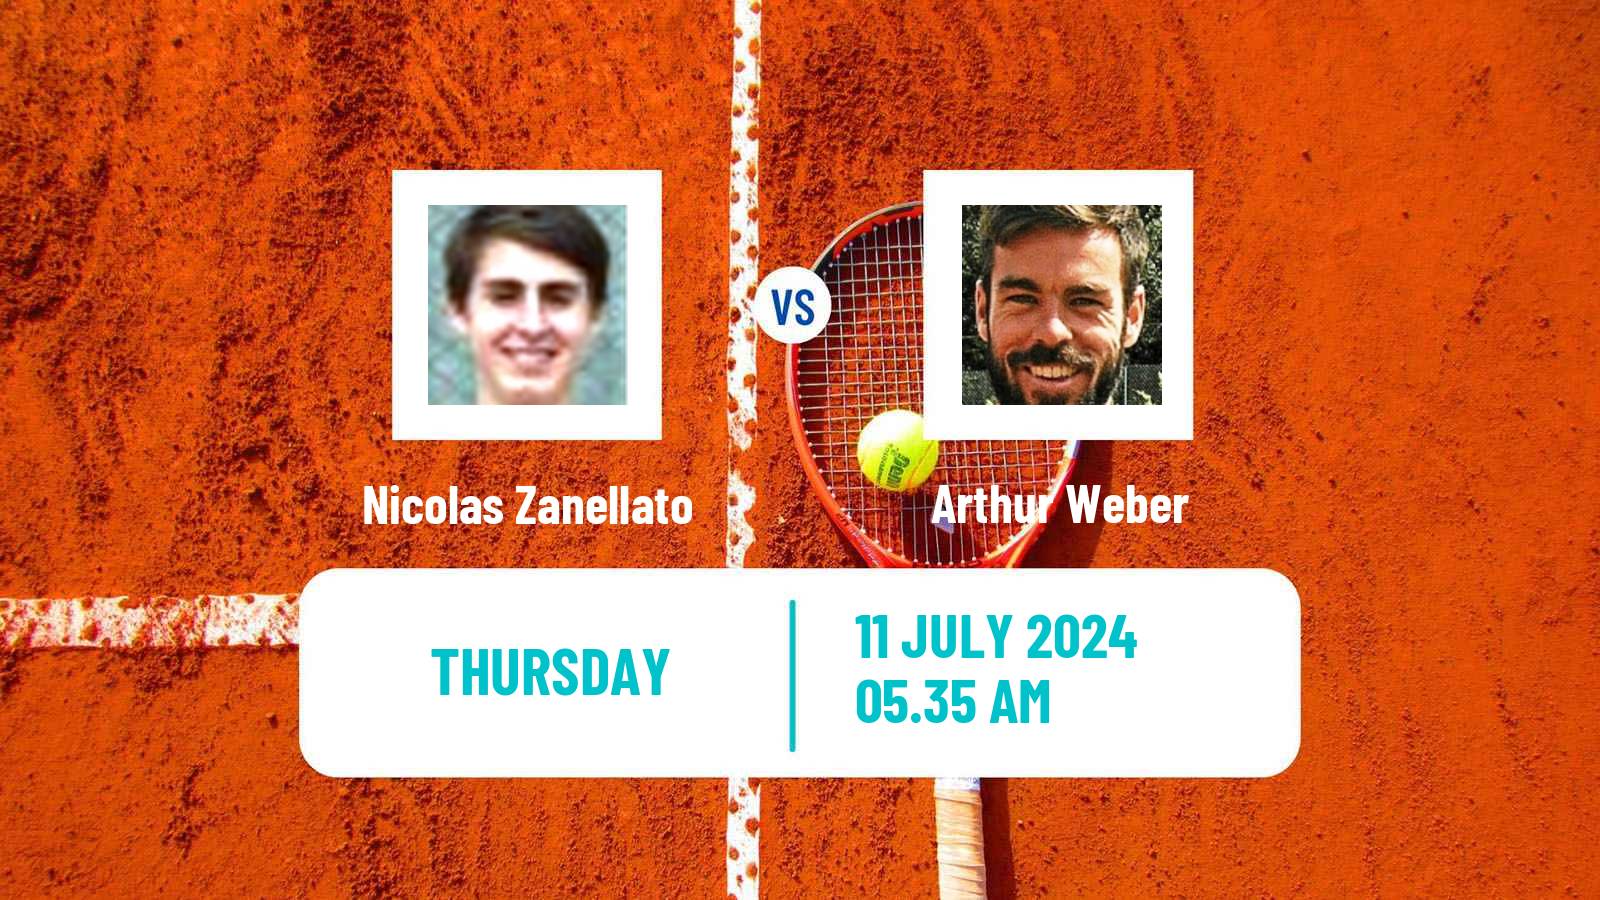 Tennis ITF M25 Kassel Men Nicolas Zanellato - Arthur Weber